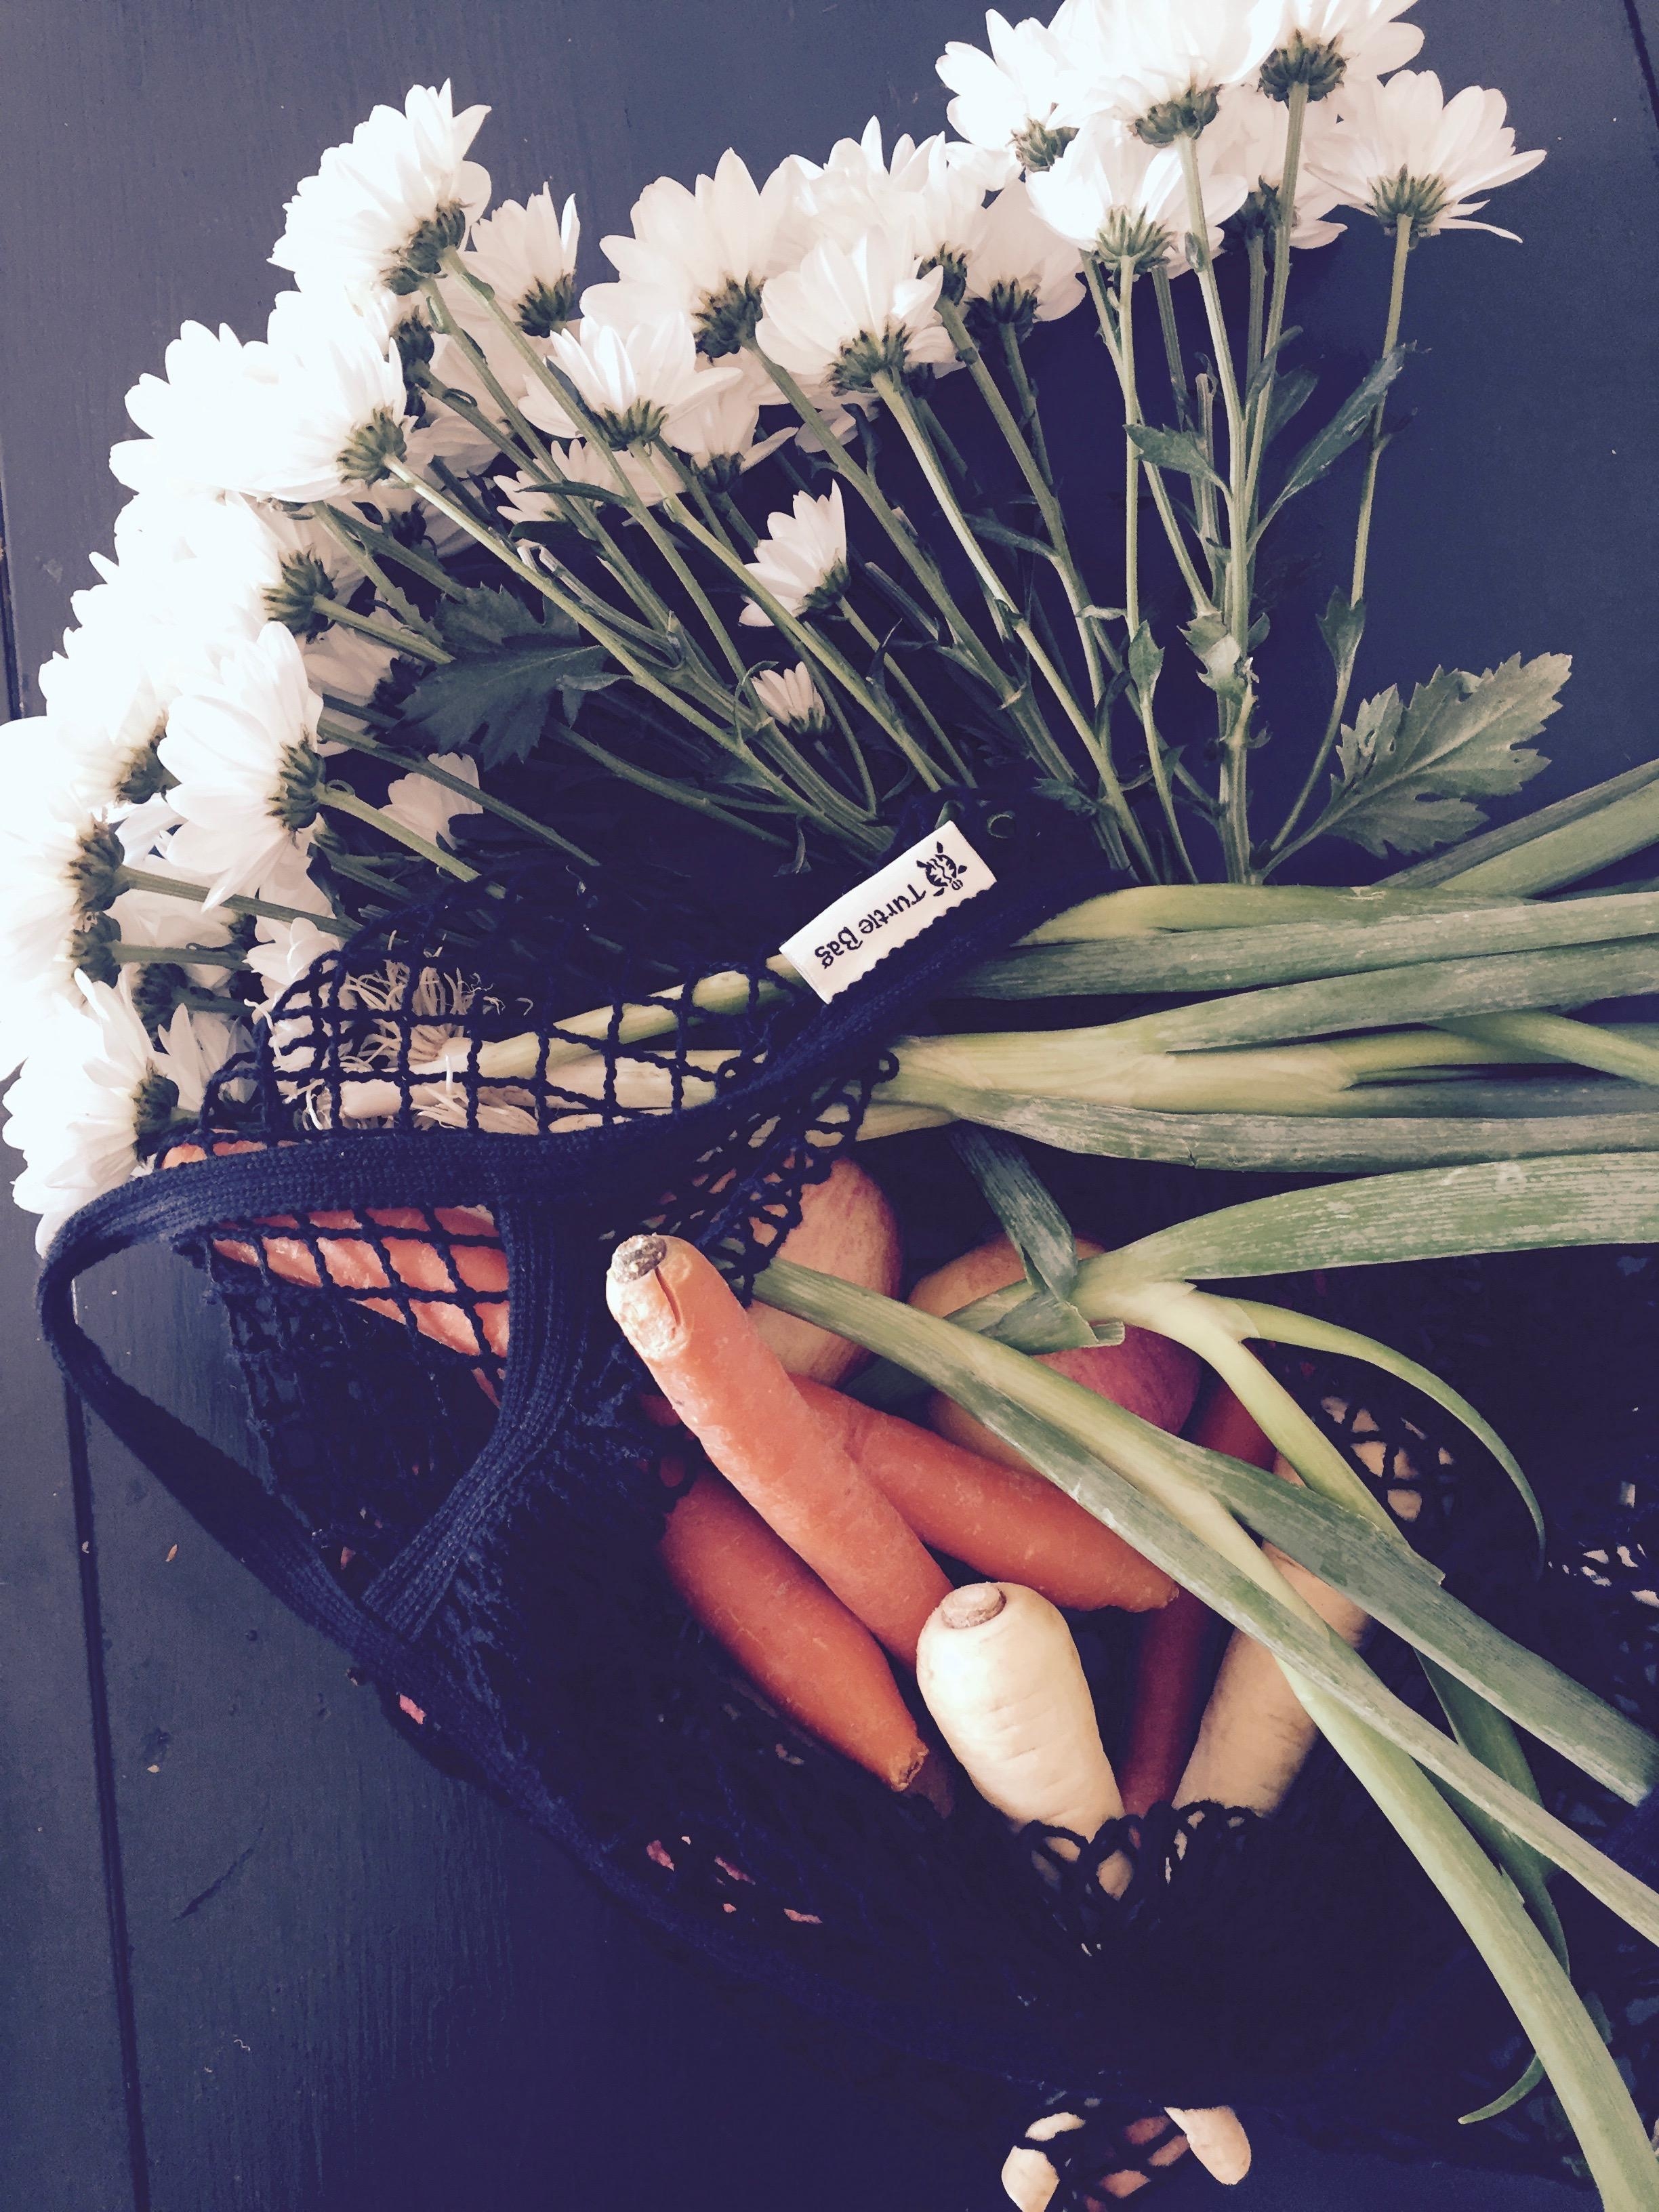 Heute war Markttag!
#unverpackt (e) Vitamine und dazu ein Strauß Blumen
#GreenChallenge